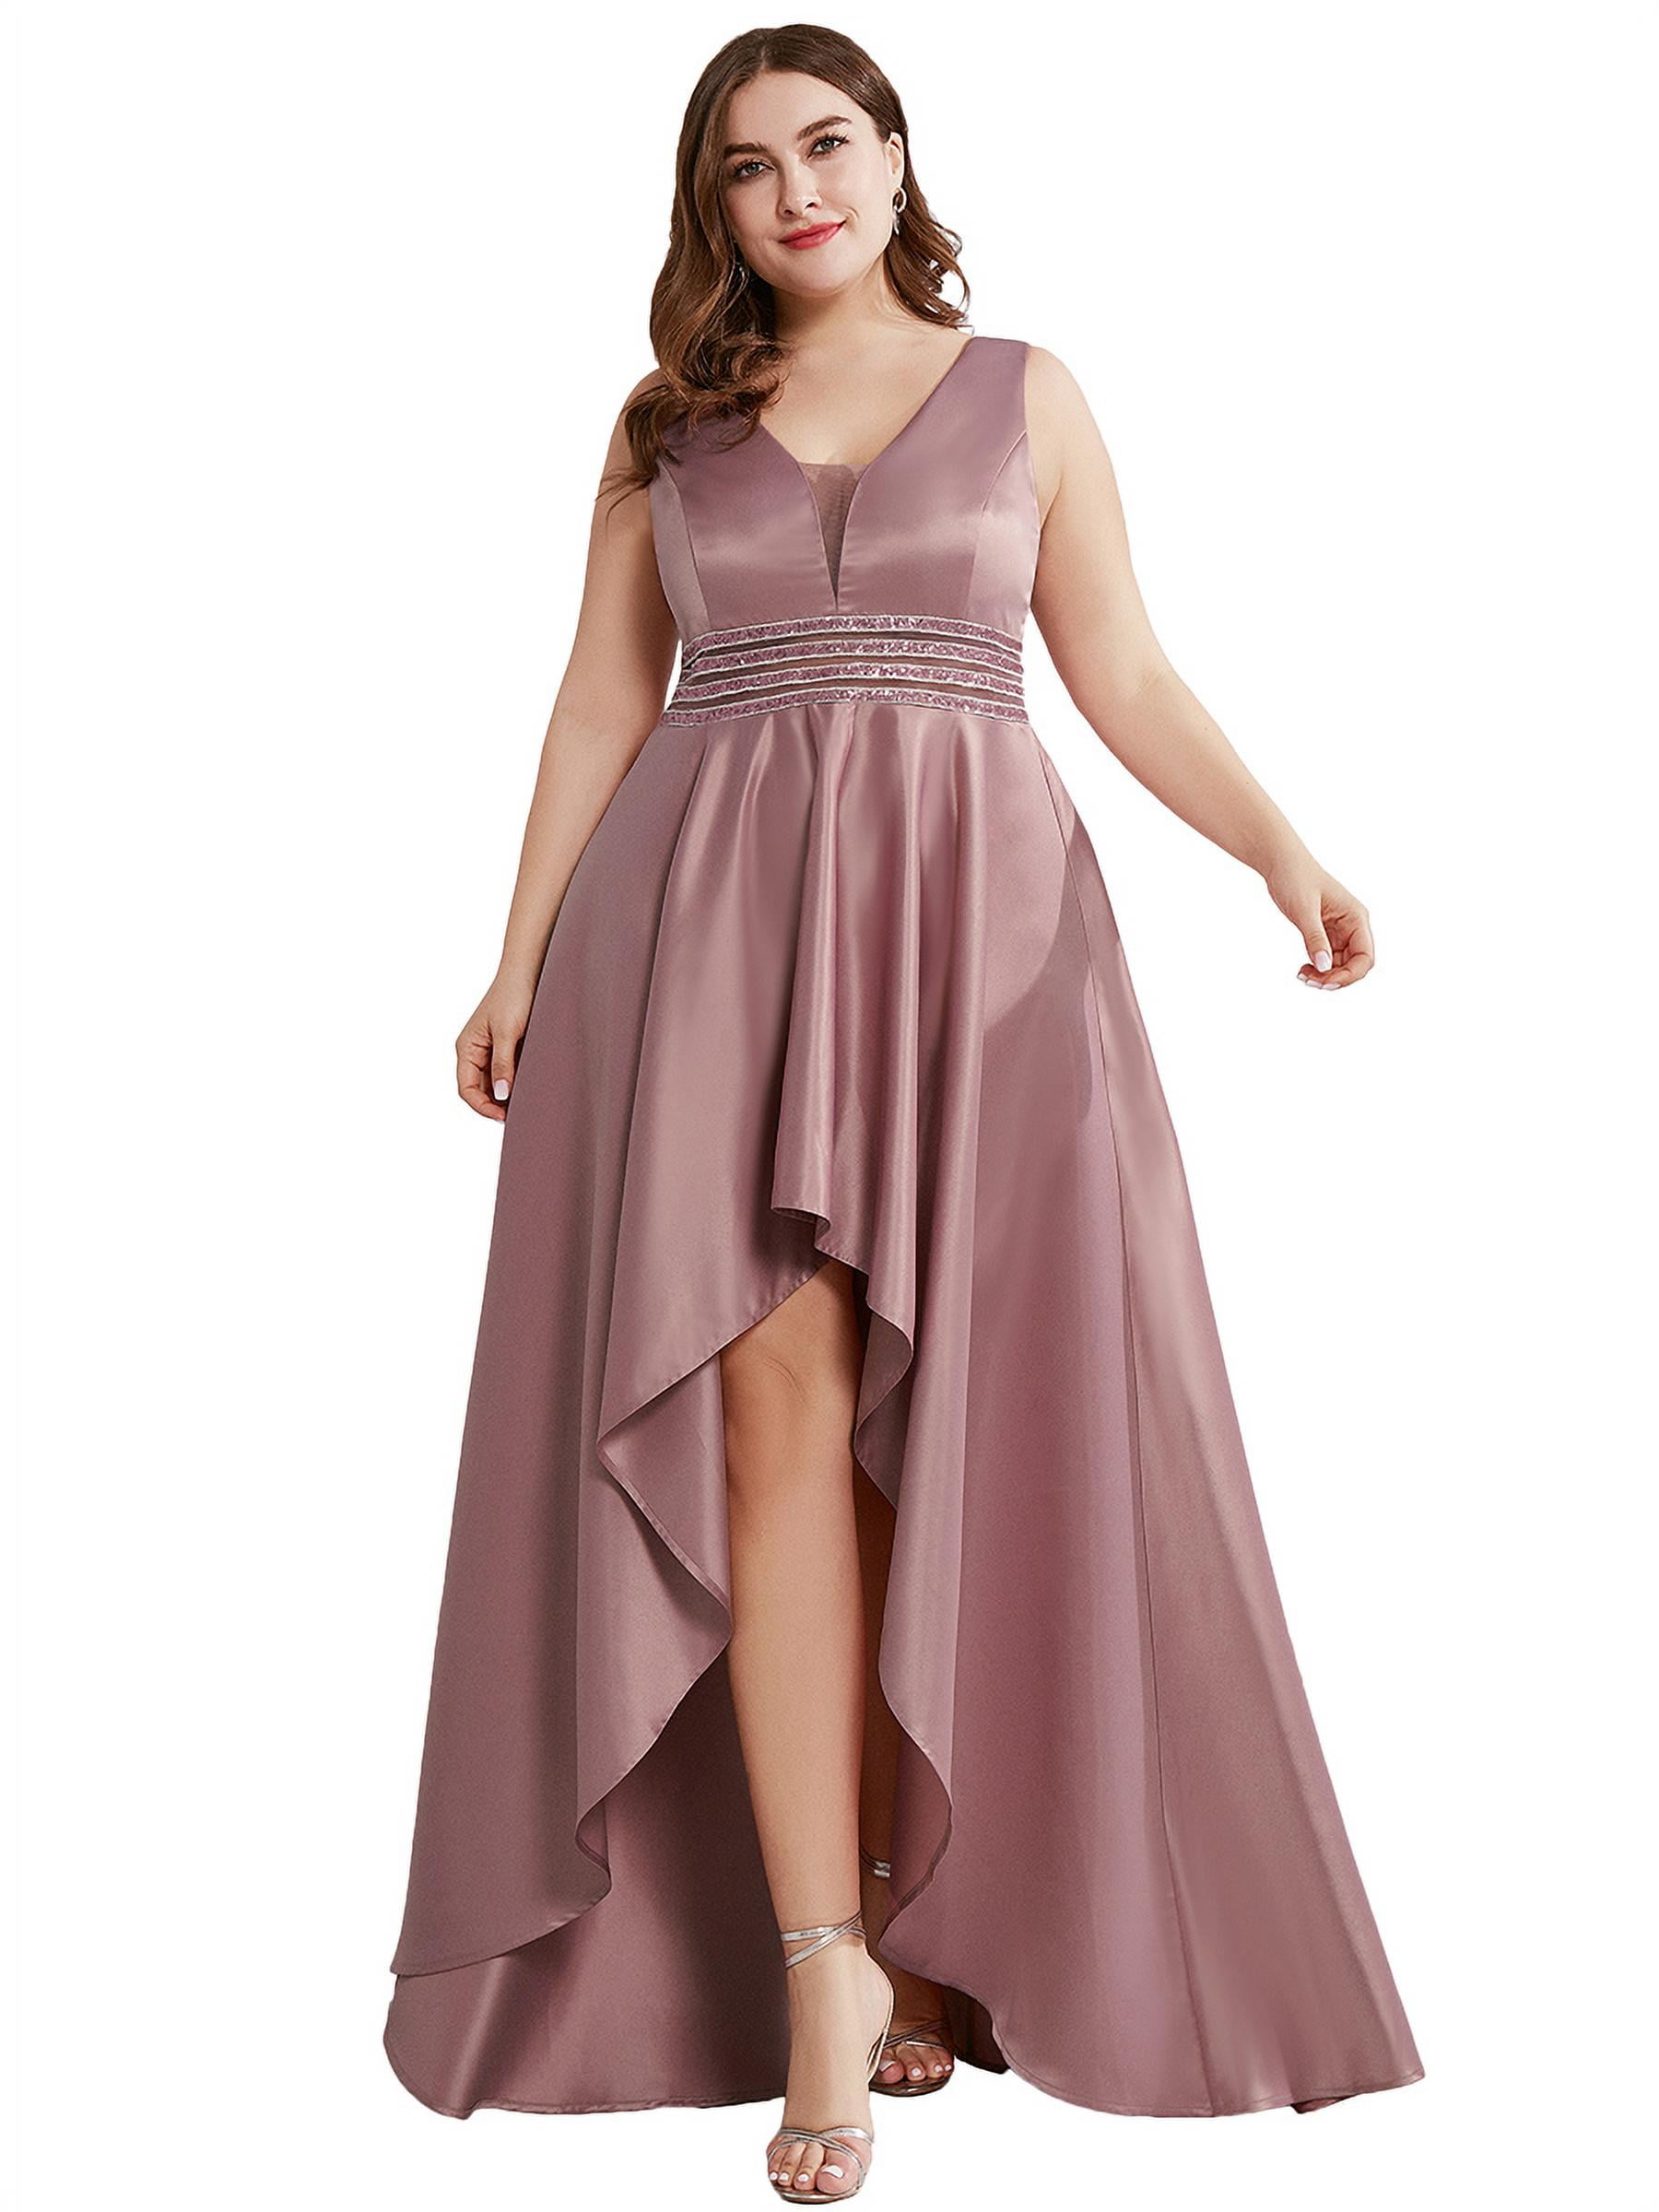 Ever-Pretty Formal Evening Dresses Long Wedding Velvet Ball Prom Gown 07182 